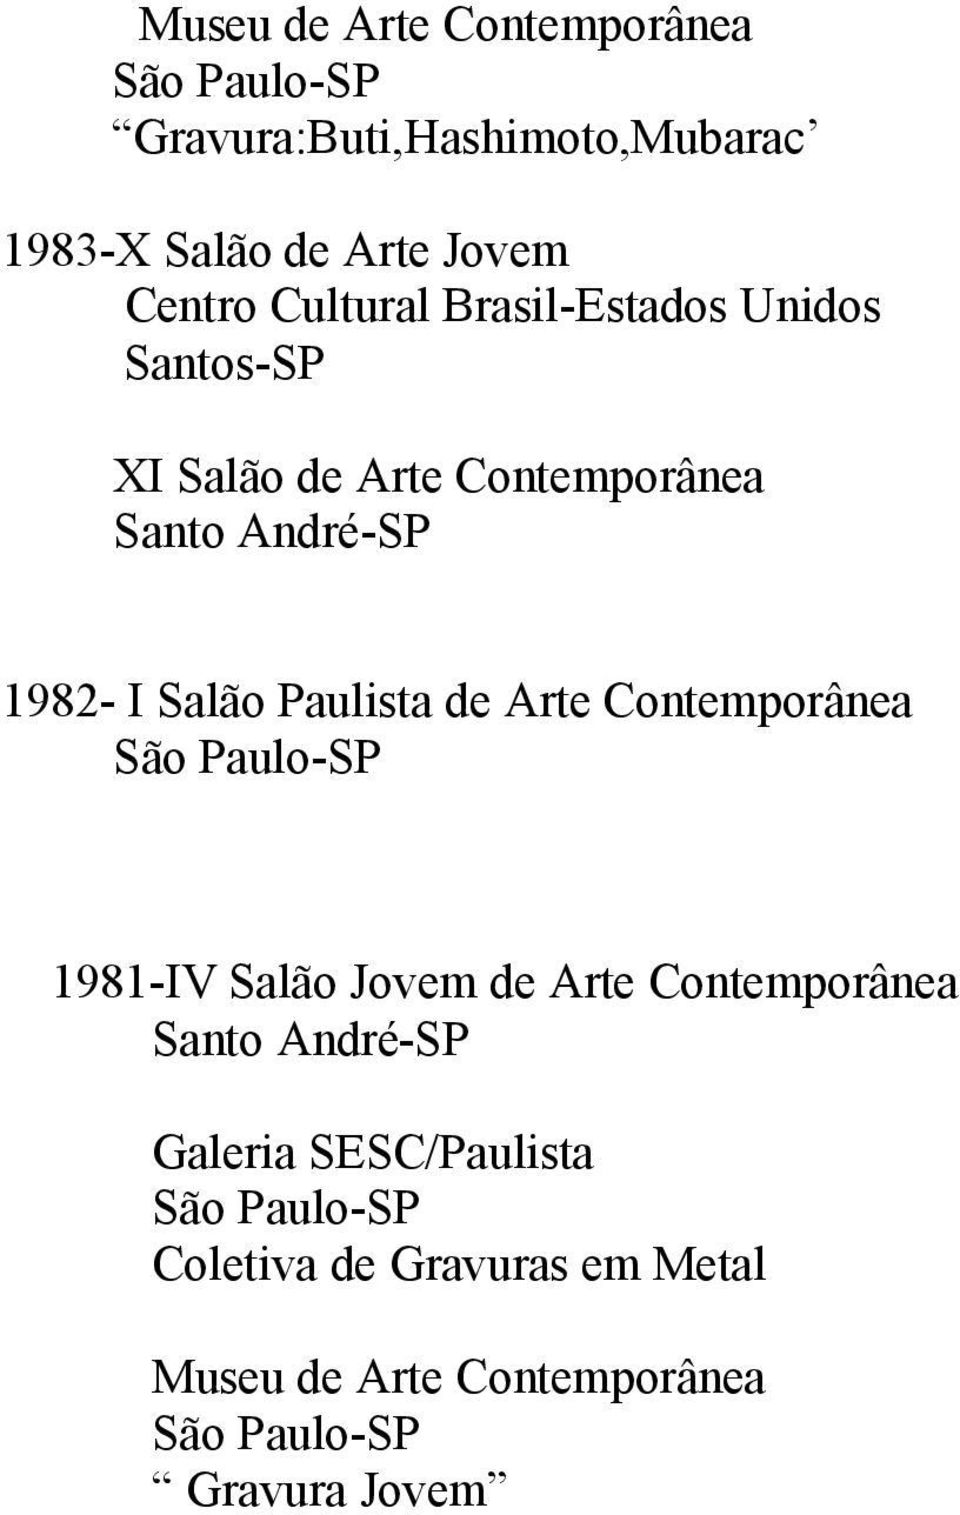 Salão Paulista de Arte Contemporânea 1981-IV Salão Jovem de Arte Contemporânea Galeria